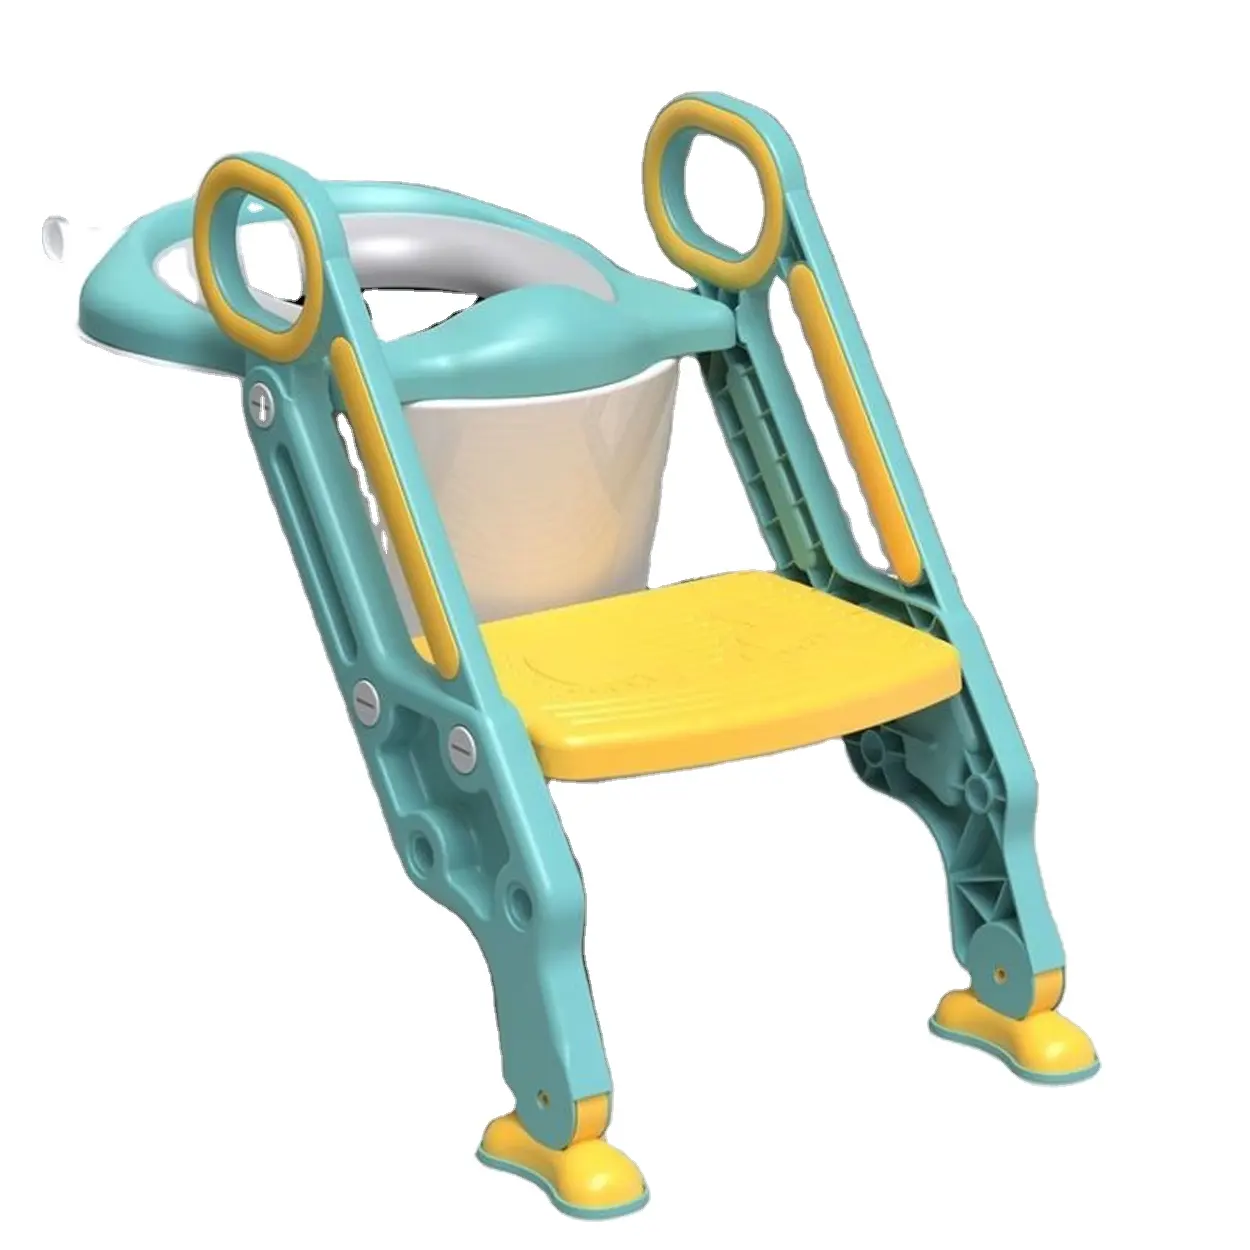 polyurethane material upuan sa banyo ng sanggol na may hagdan baby toilet seat with ladder kursi toilet bayi dengan tangga Step